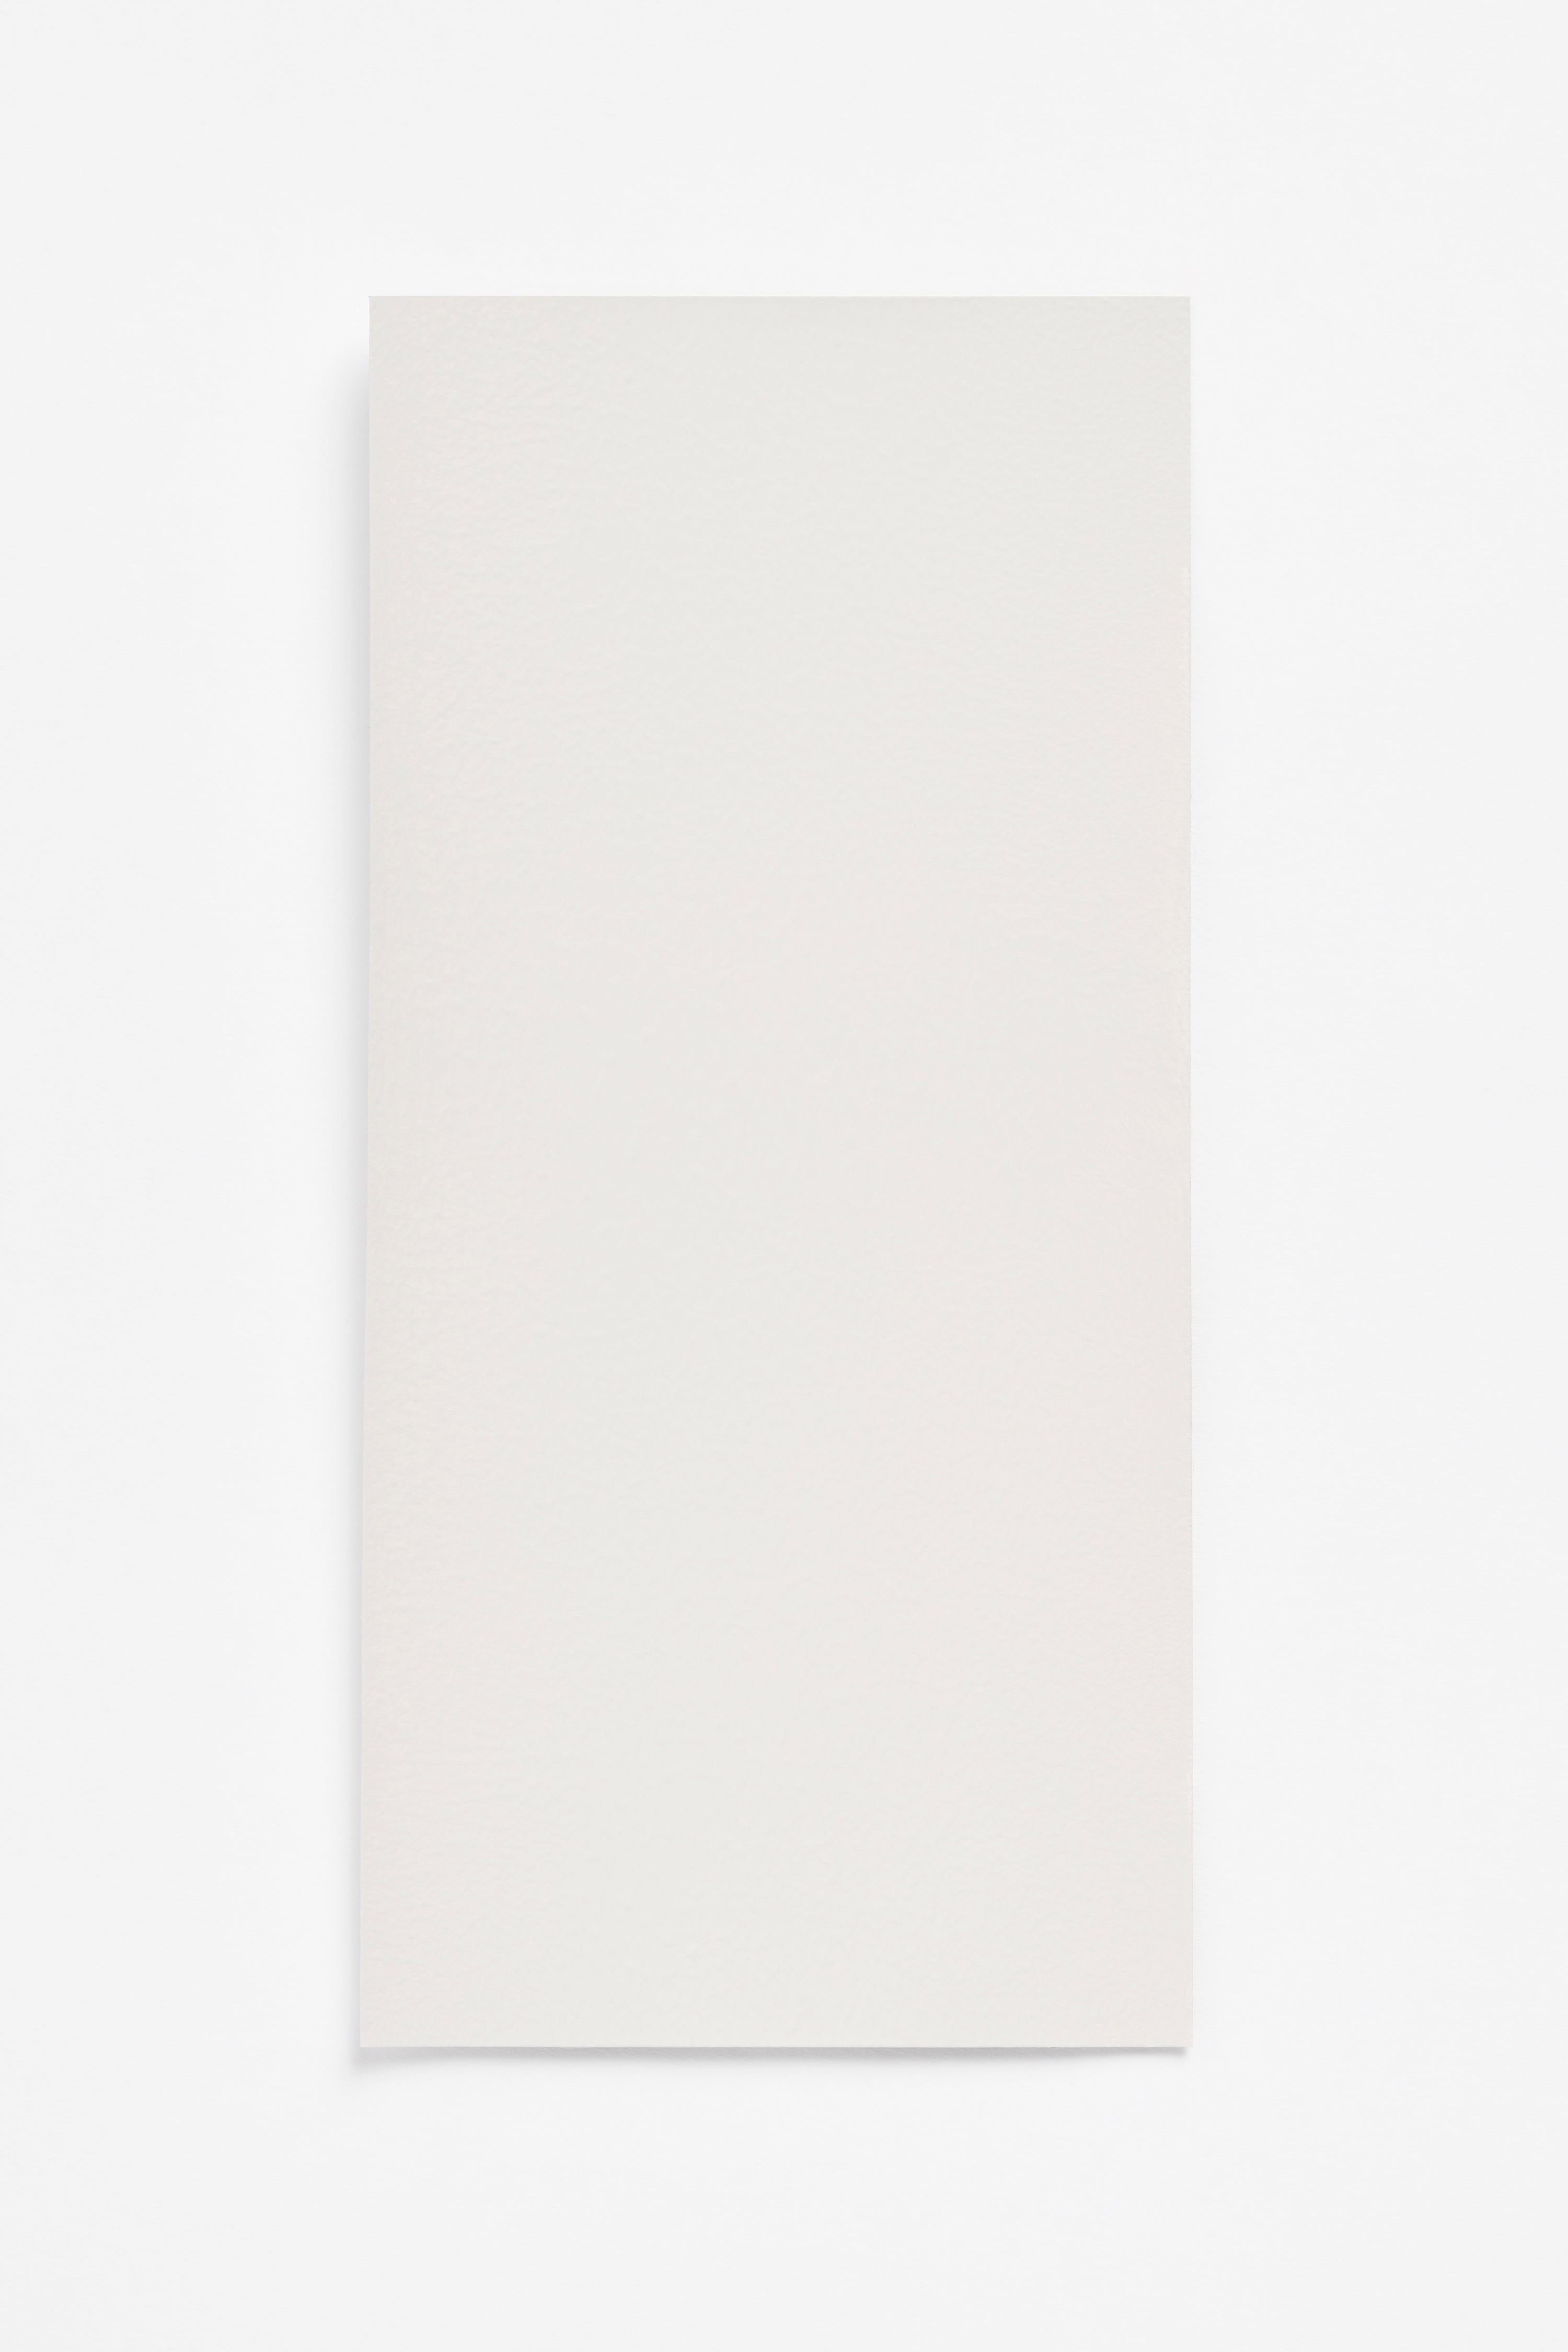 Cement — a paint colour developed by Yvonne Koné for Blēo